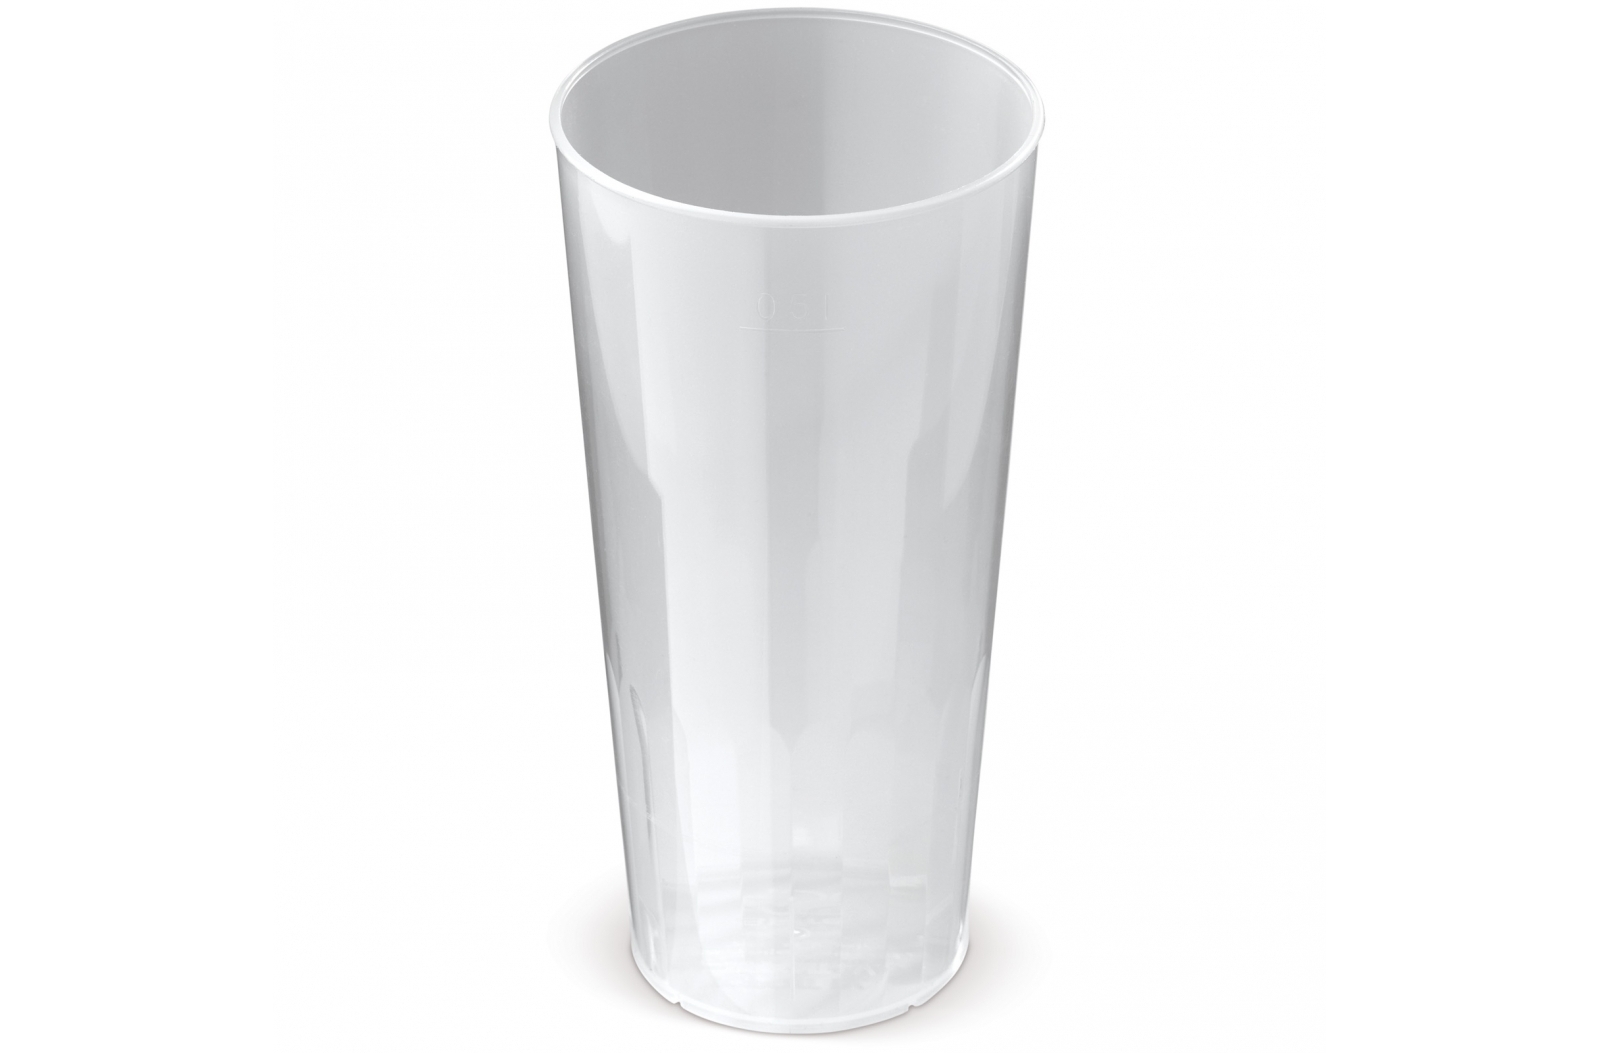 Bicchieri di Plastica Riutilizzabili - Brebbia